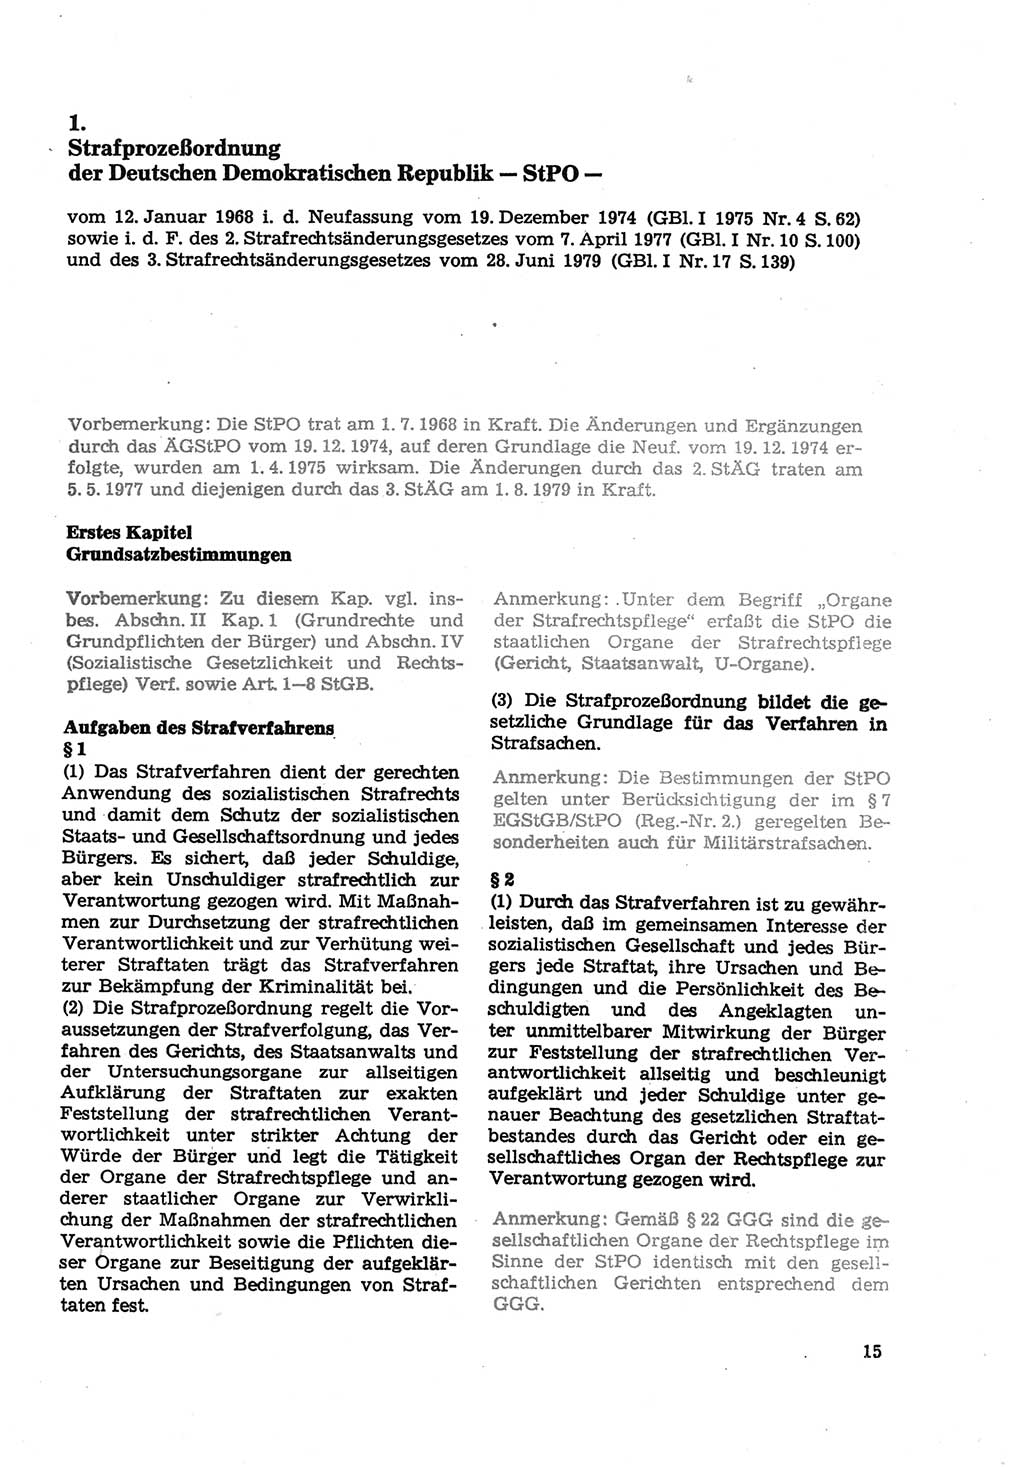 Strafprozeßordnung (StPO) der Deutschen Demokratischen Republik (DDR) sowie angrenzende Gesetze und Bestimmungen 1979, Seite 15 (StPO DDR Ges. Best. 1979, S. 15)